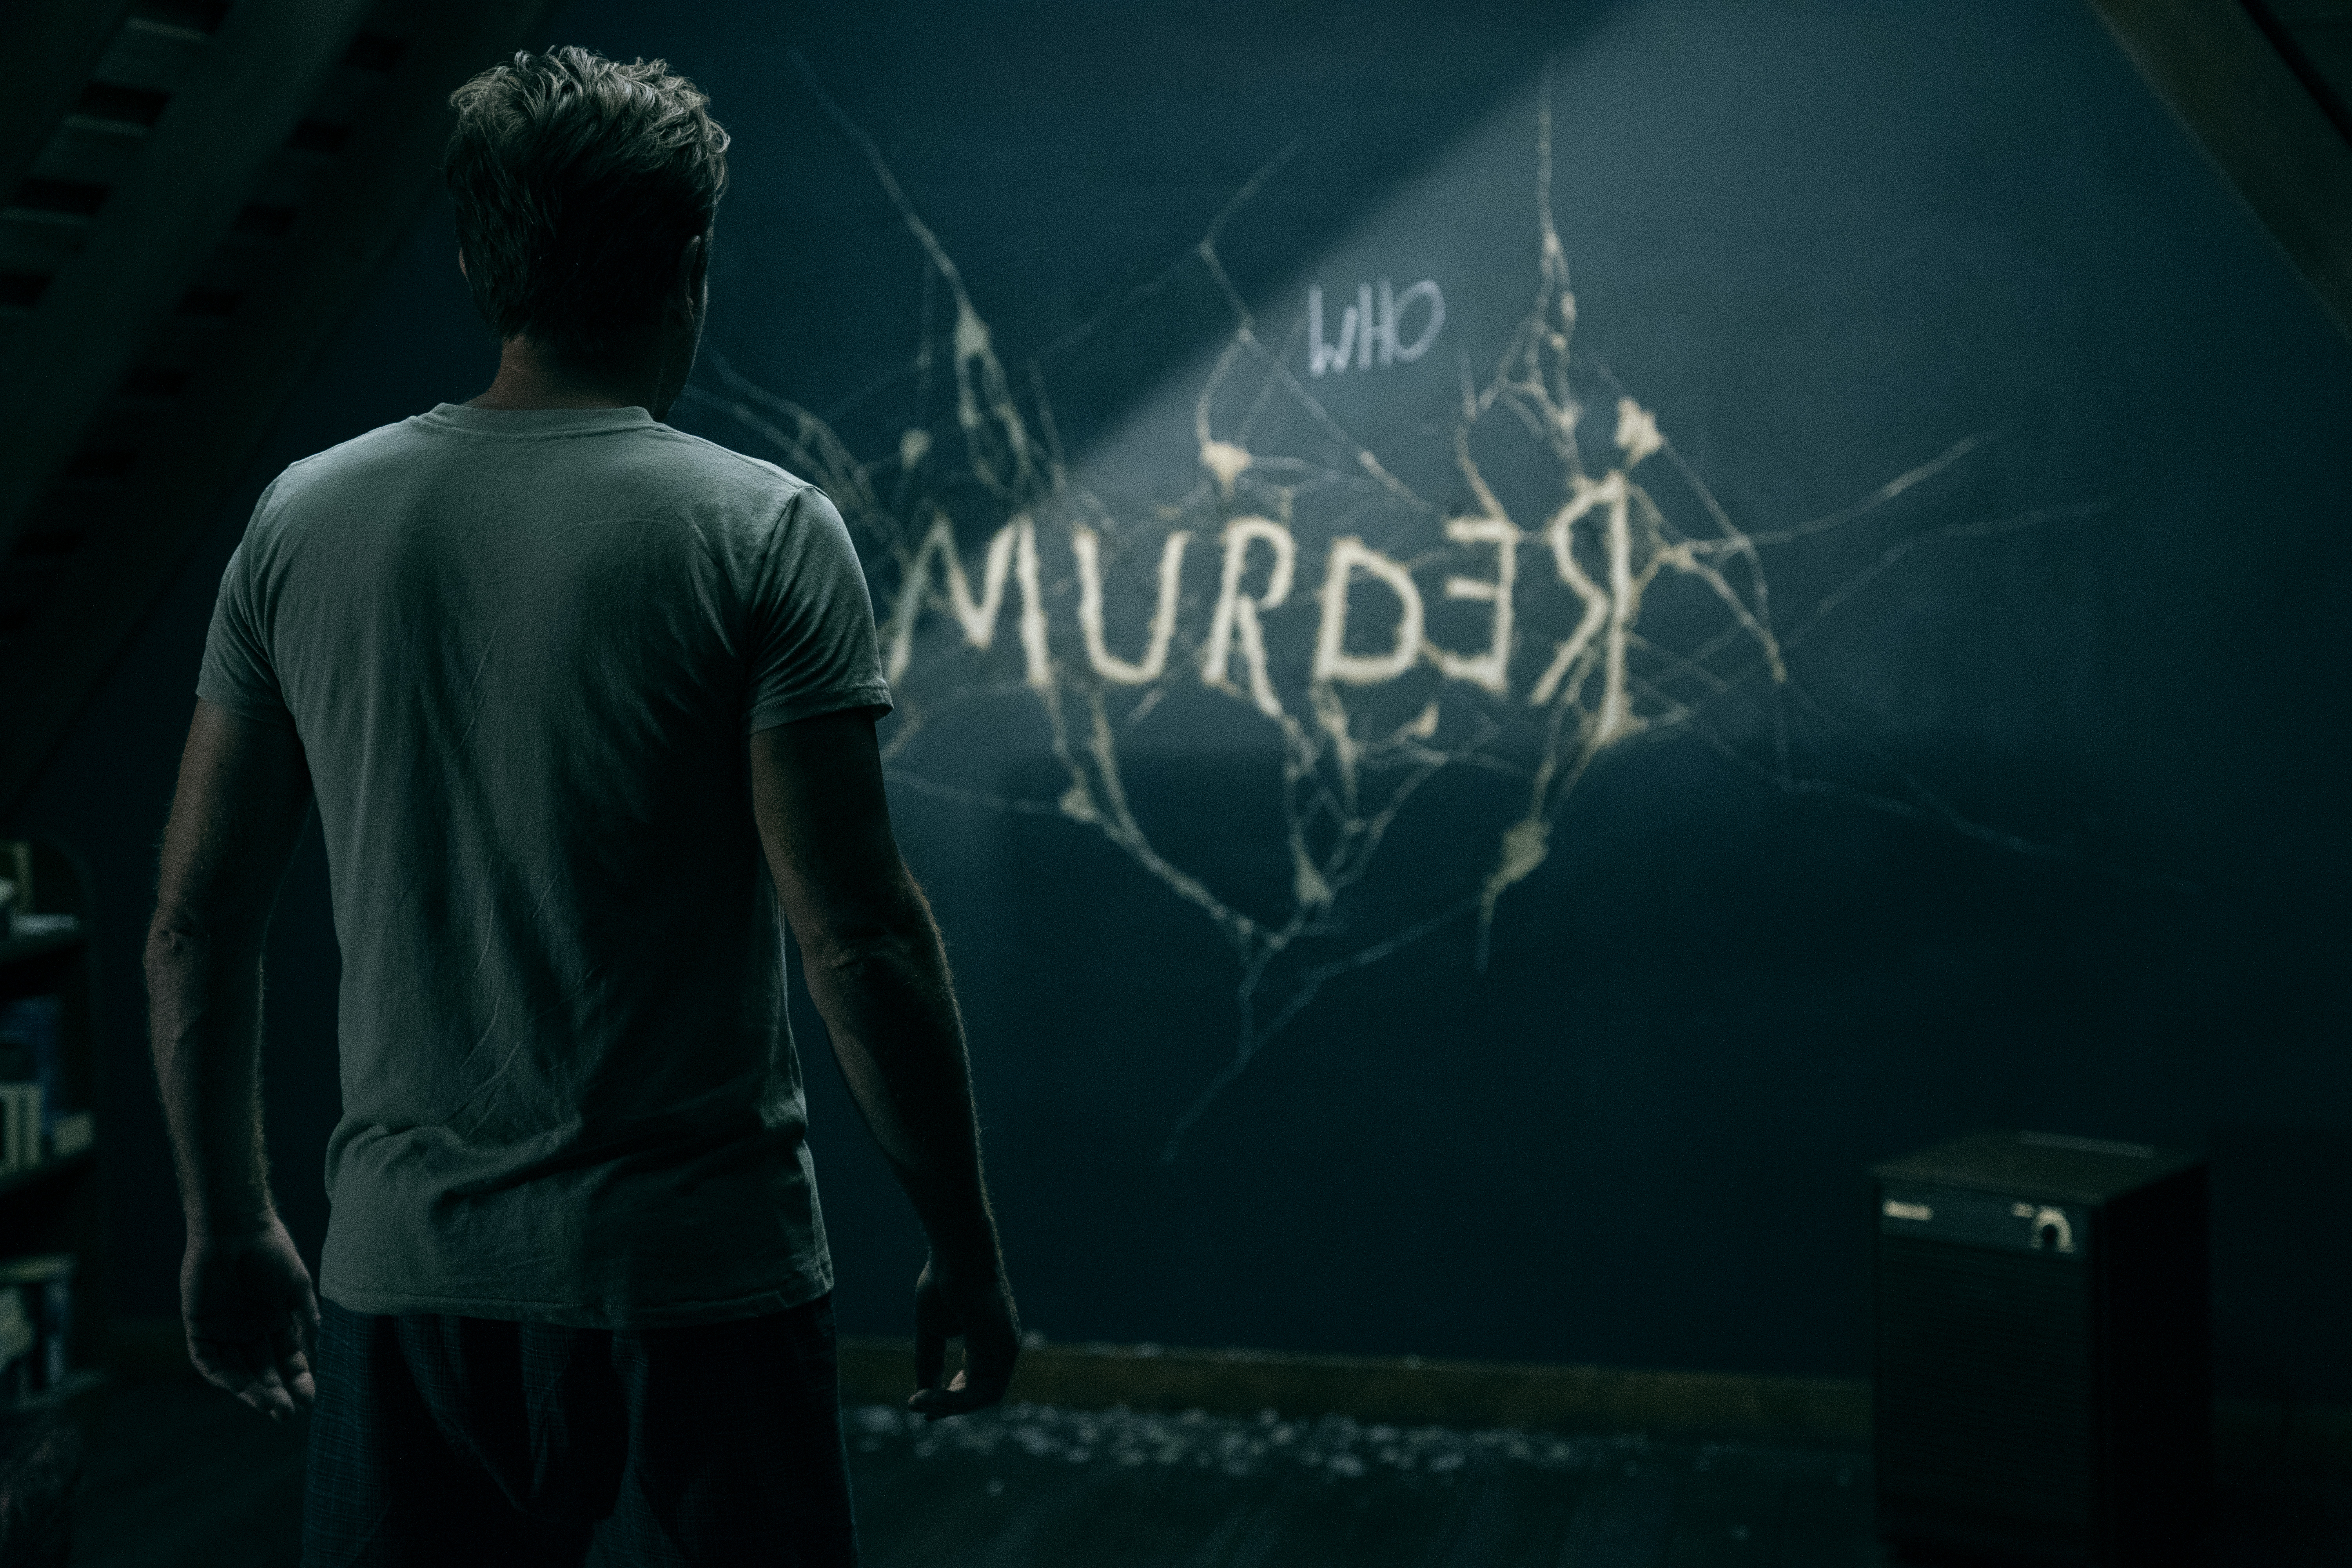 Dan Torrance (Ewan McGregor) looks at a wall with Murder written on it in Doctor Sleep